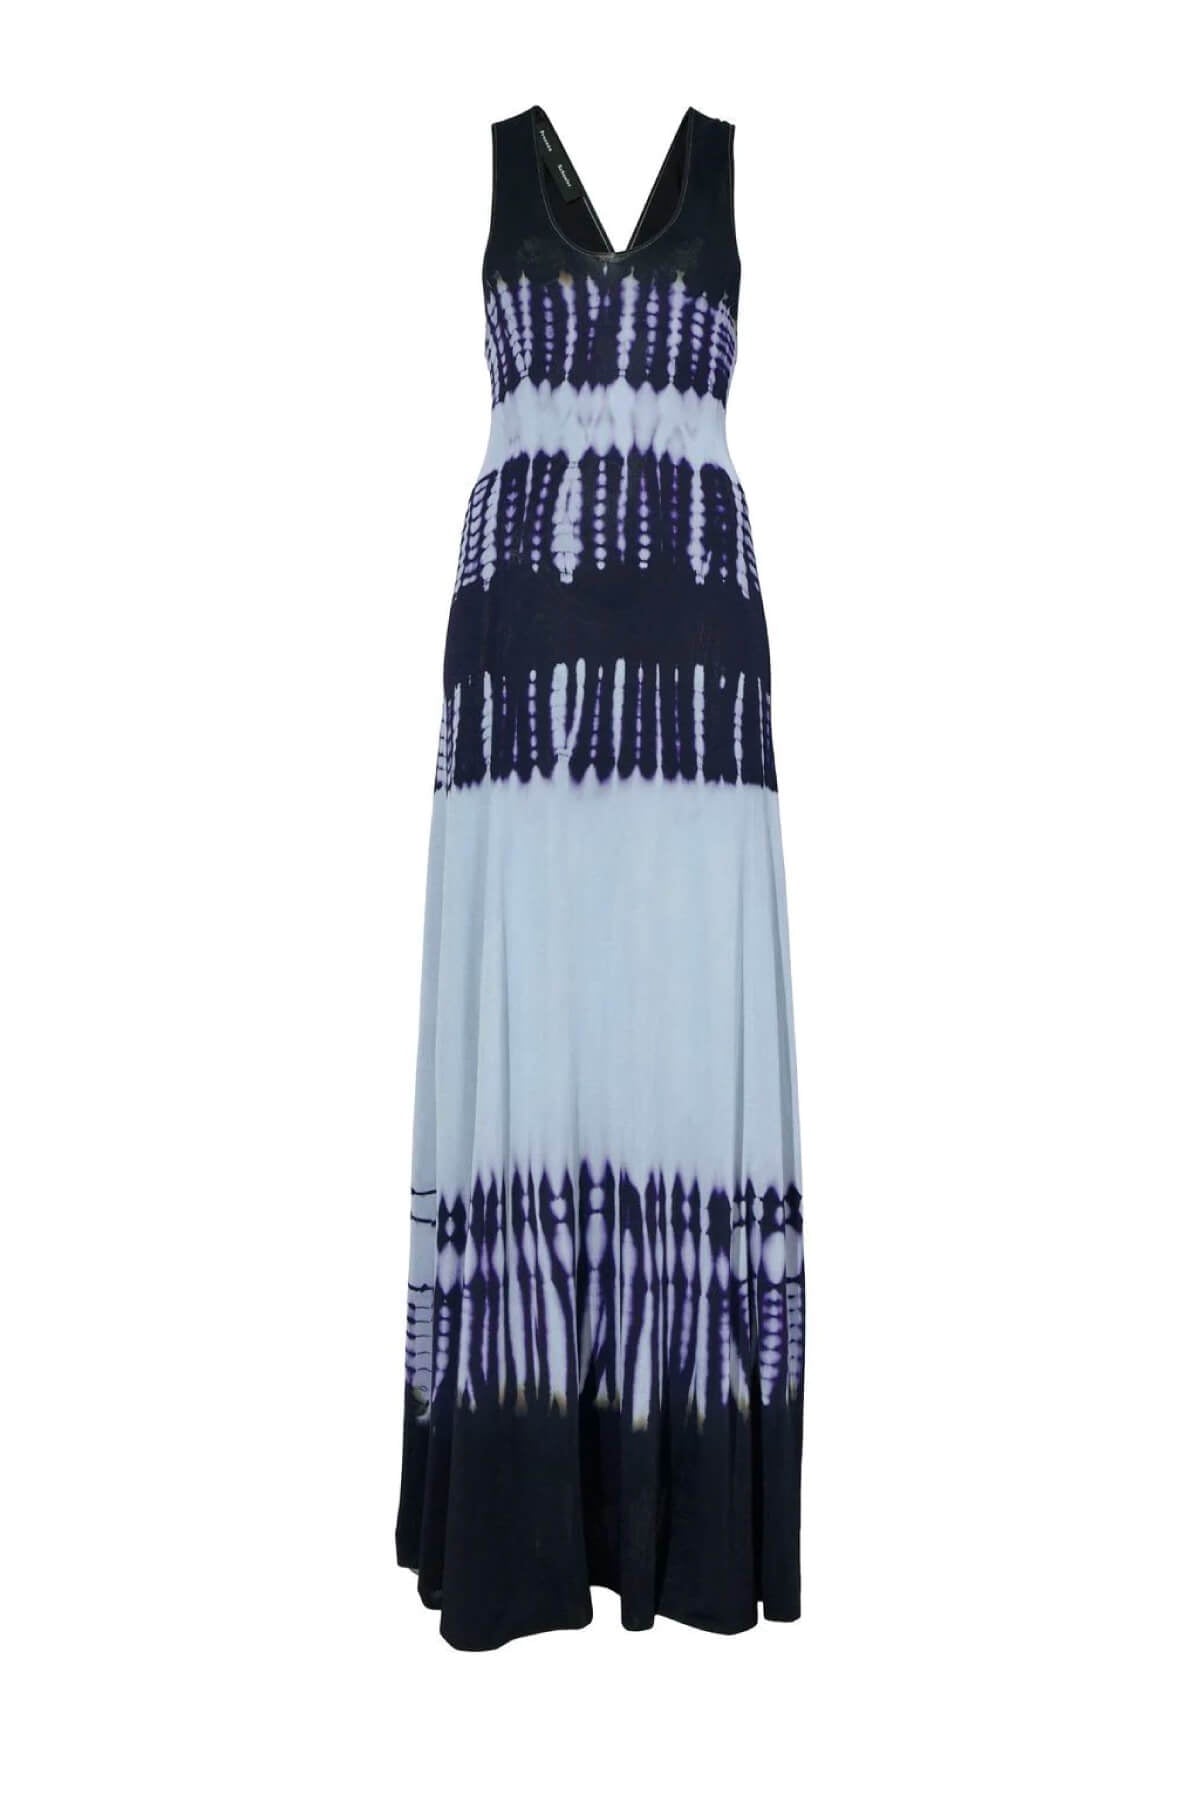 Proenza Schouler Viscose Knit Tie Dye Dress - Blue Multi